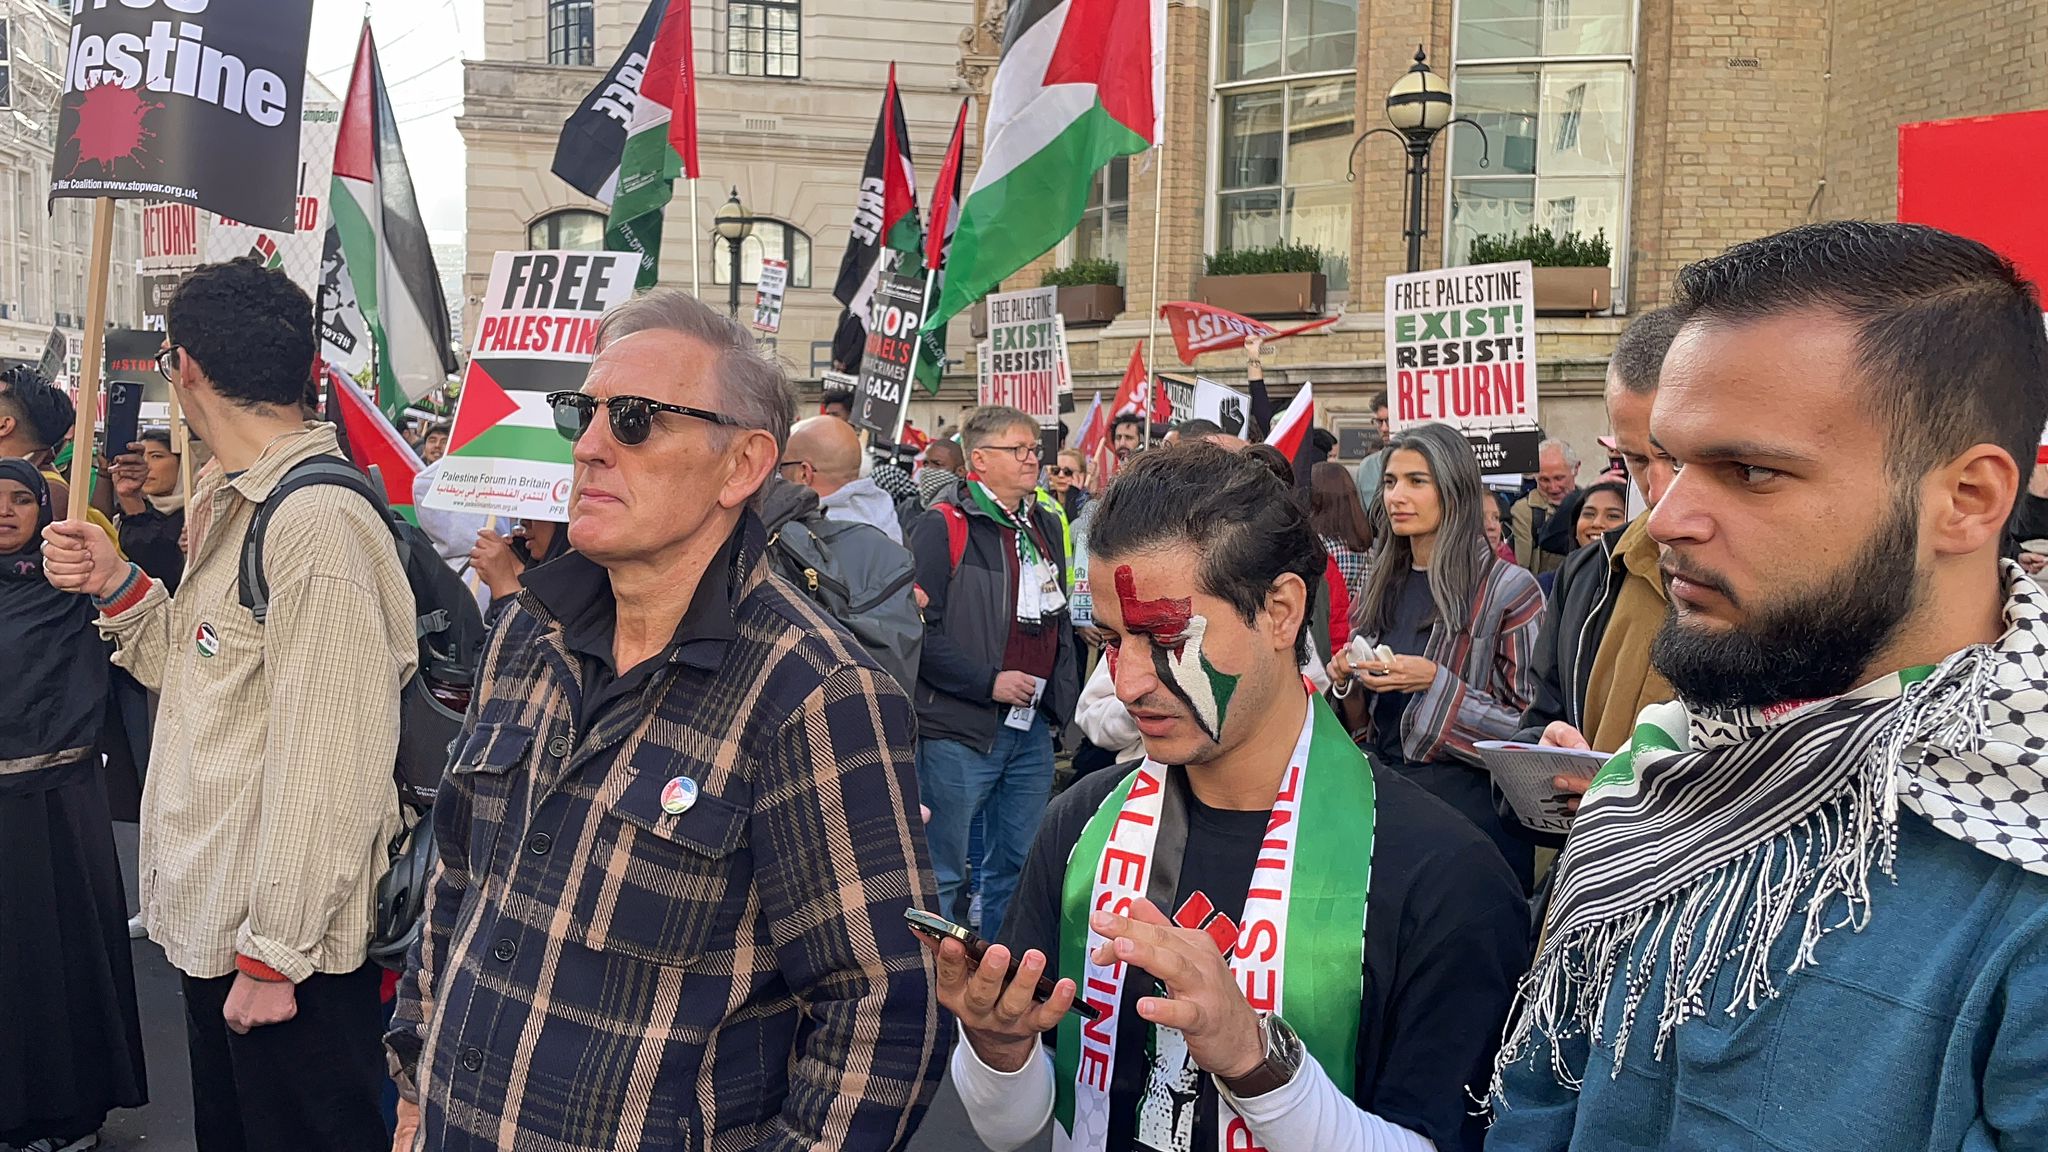 منظاهرون داعمون للقضية الفلسطينية بالقرب من داونينج ستريت في لندن